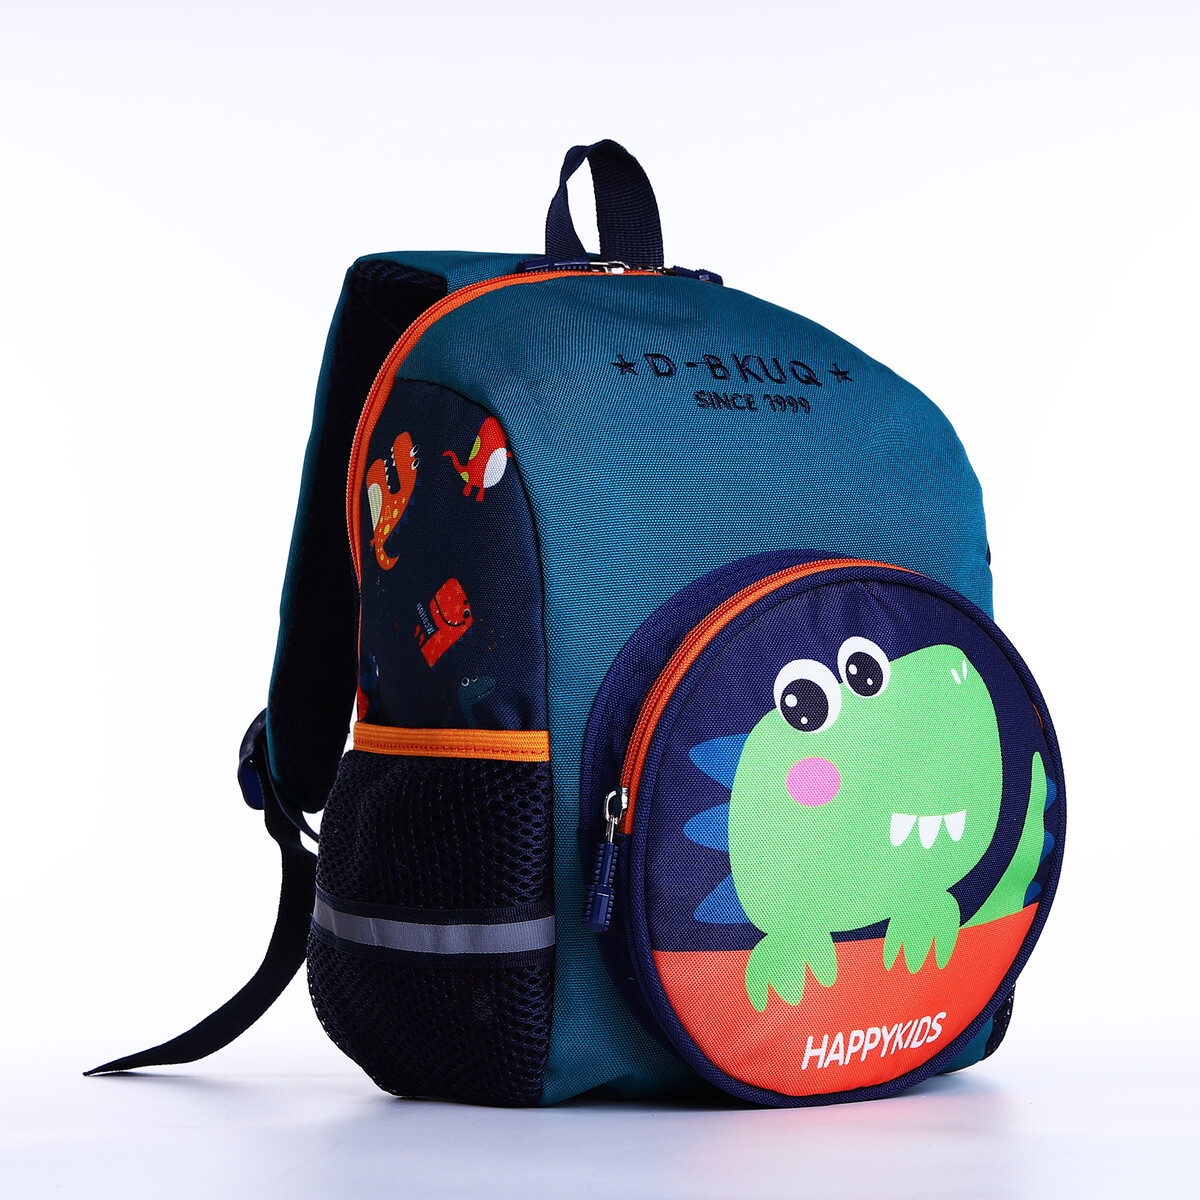 Рюкзак детский на молнии, 3 наружных кармана, цвет зеленый рюкзак школьный из текстиля на молнии 3 кармана пенал зеленый